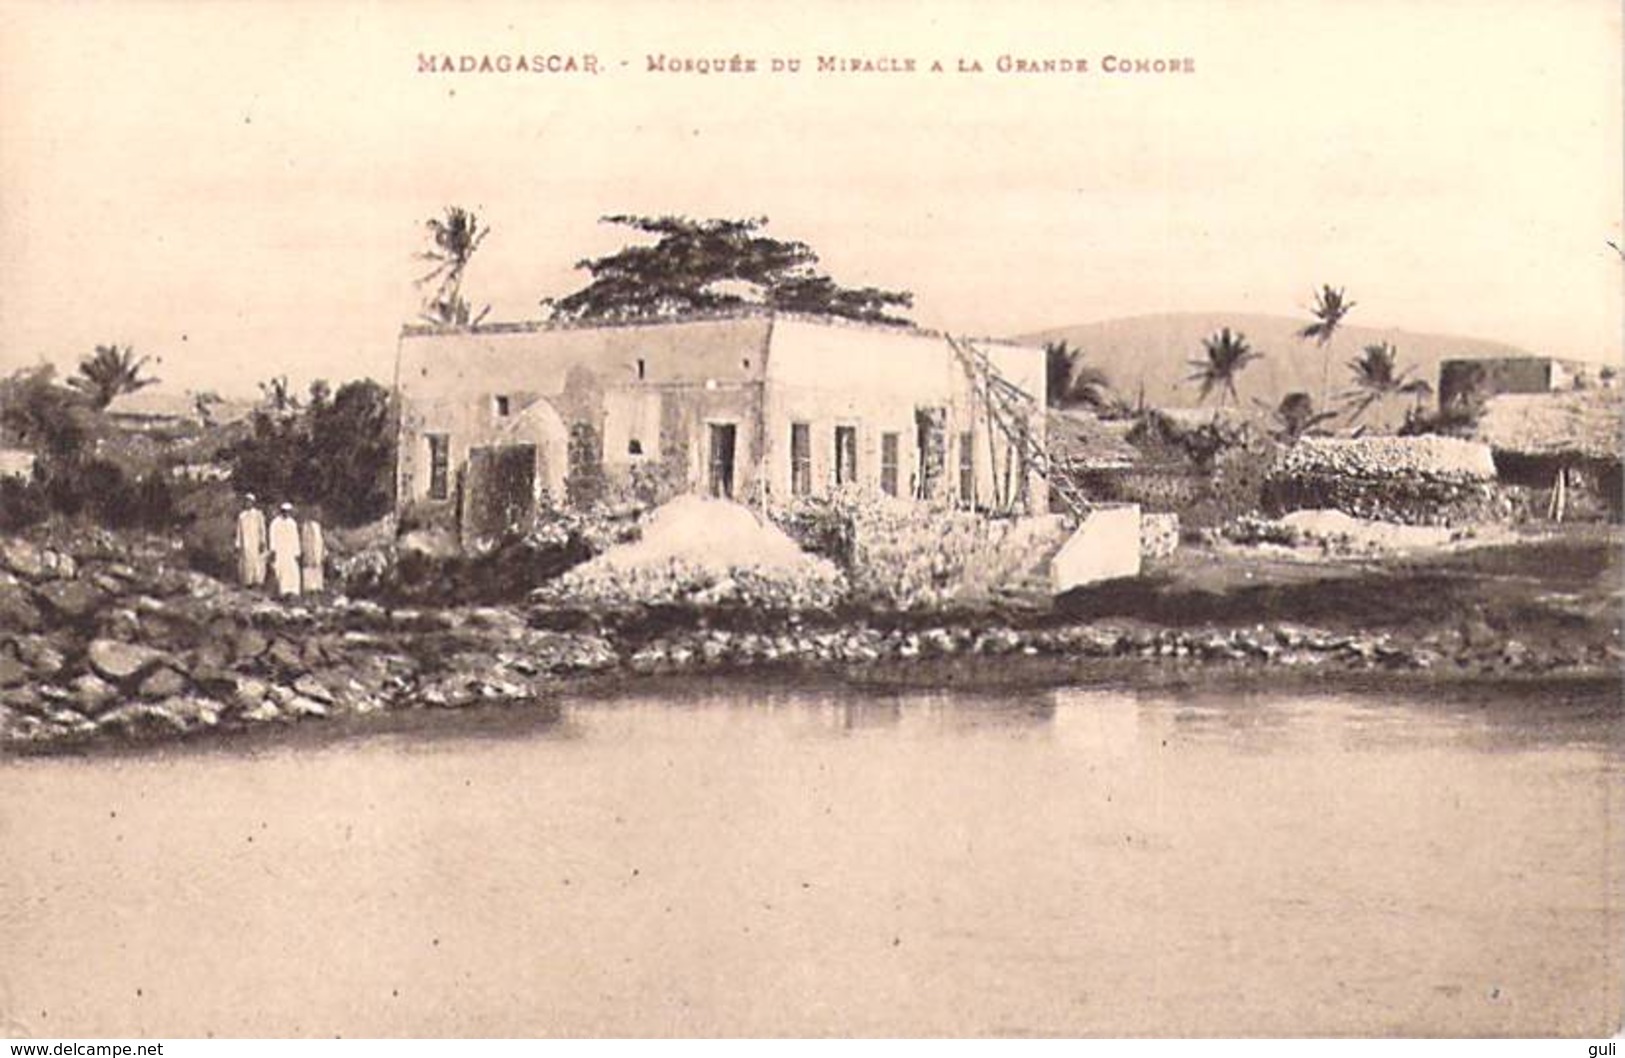 Afrique  (MADAGASCAR) Mosquée Du Miracle à La Grande Comore *PRIX FIXE - Comores